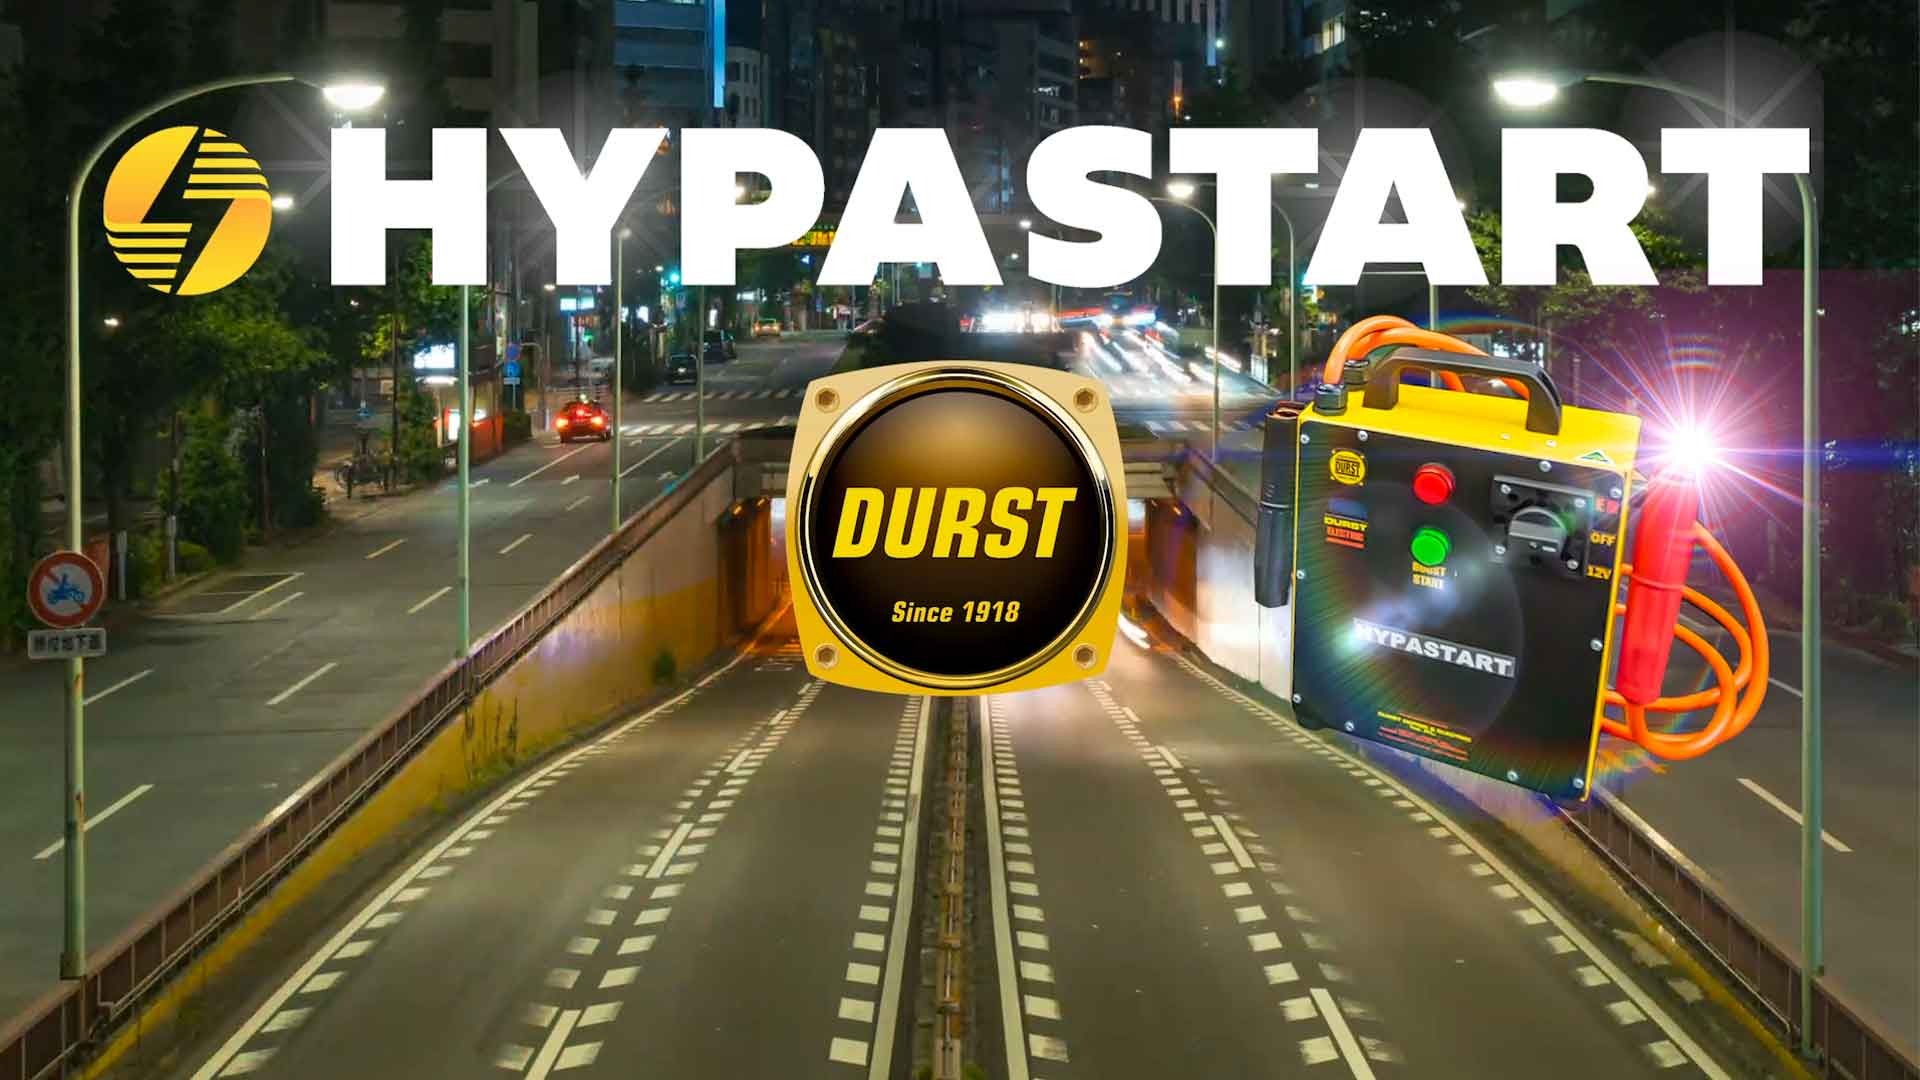 The Durst Hypastart® Super Capacitor Jump Starter banner